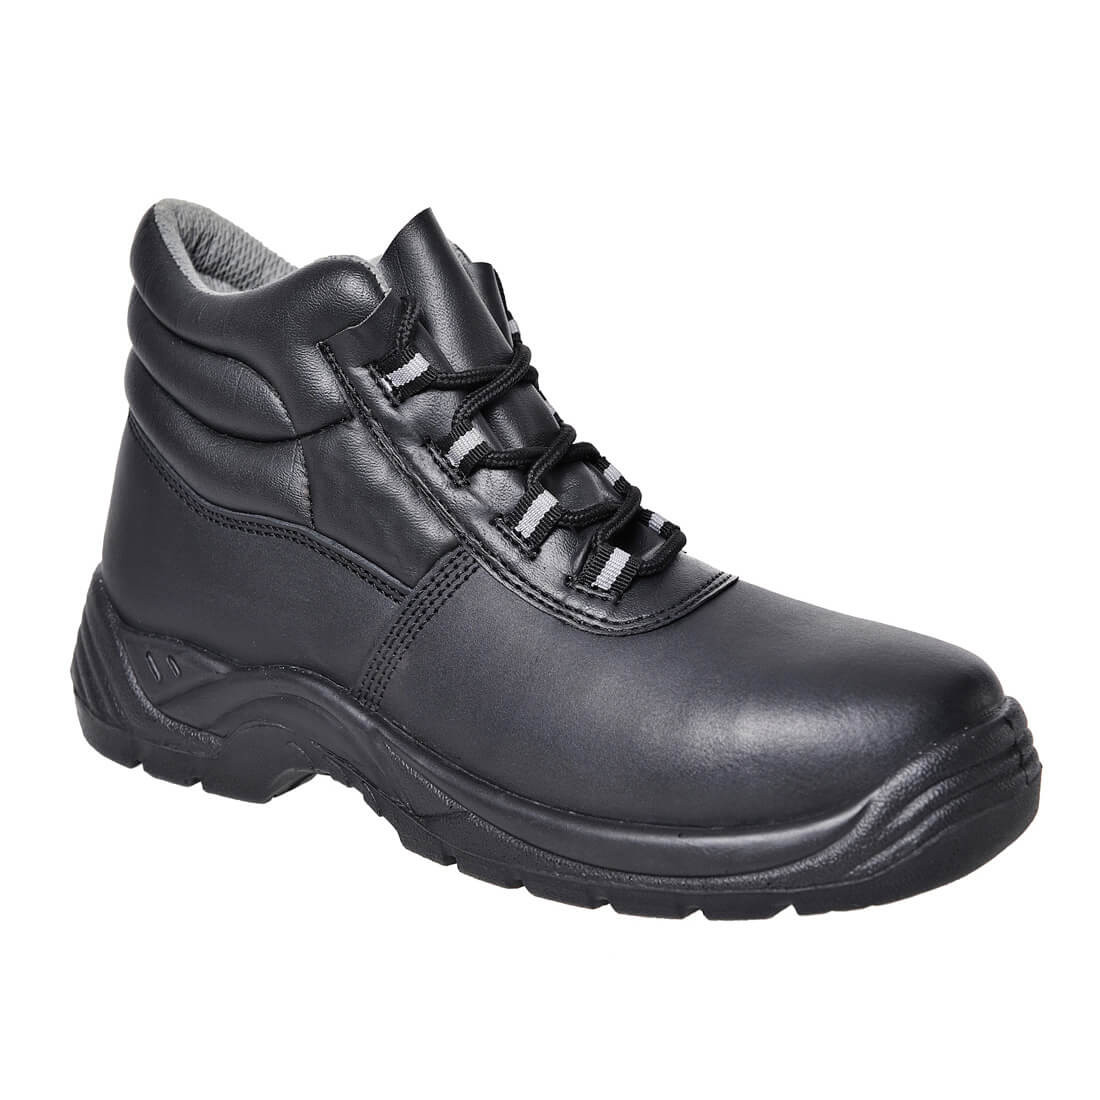 Brodequin Compositelite™ S1P - Les chaussures de protection